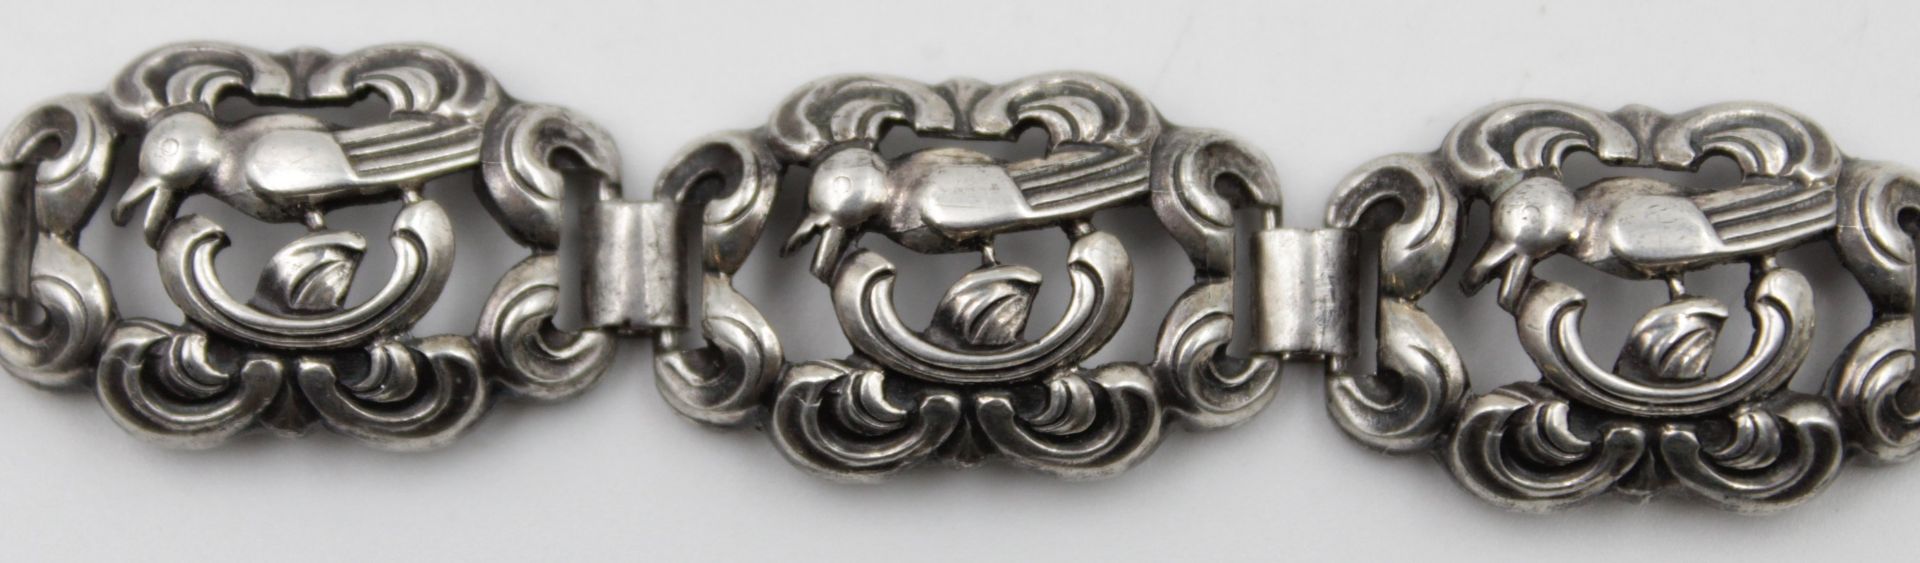 835er Silber-Armband, Durchbrucharbeit, 20/30er Jahre, 24,4gr., L-19,5cm. - Bild 2 aus 4